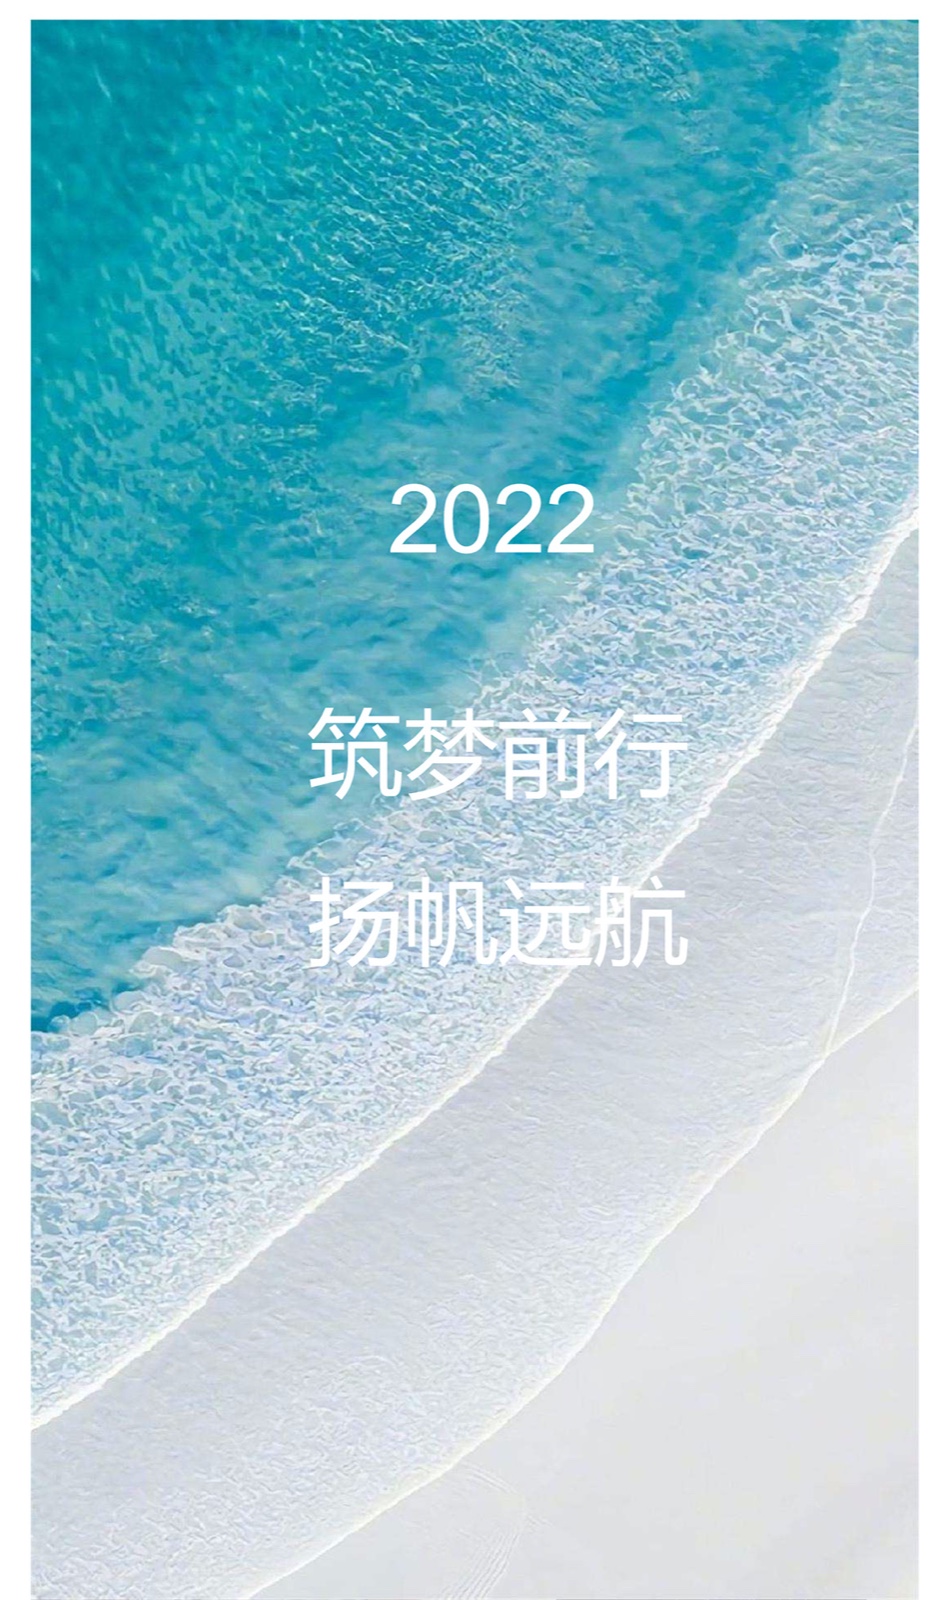 韵博设计：2022年会盛典